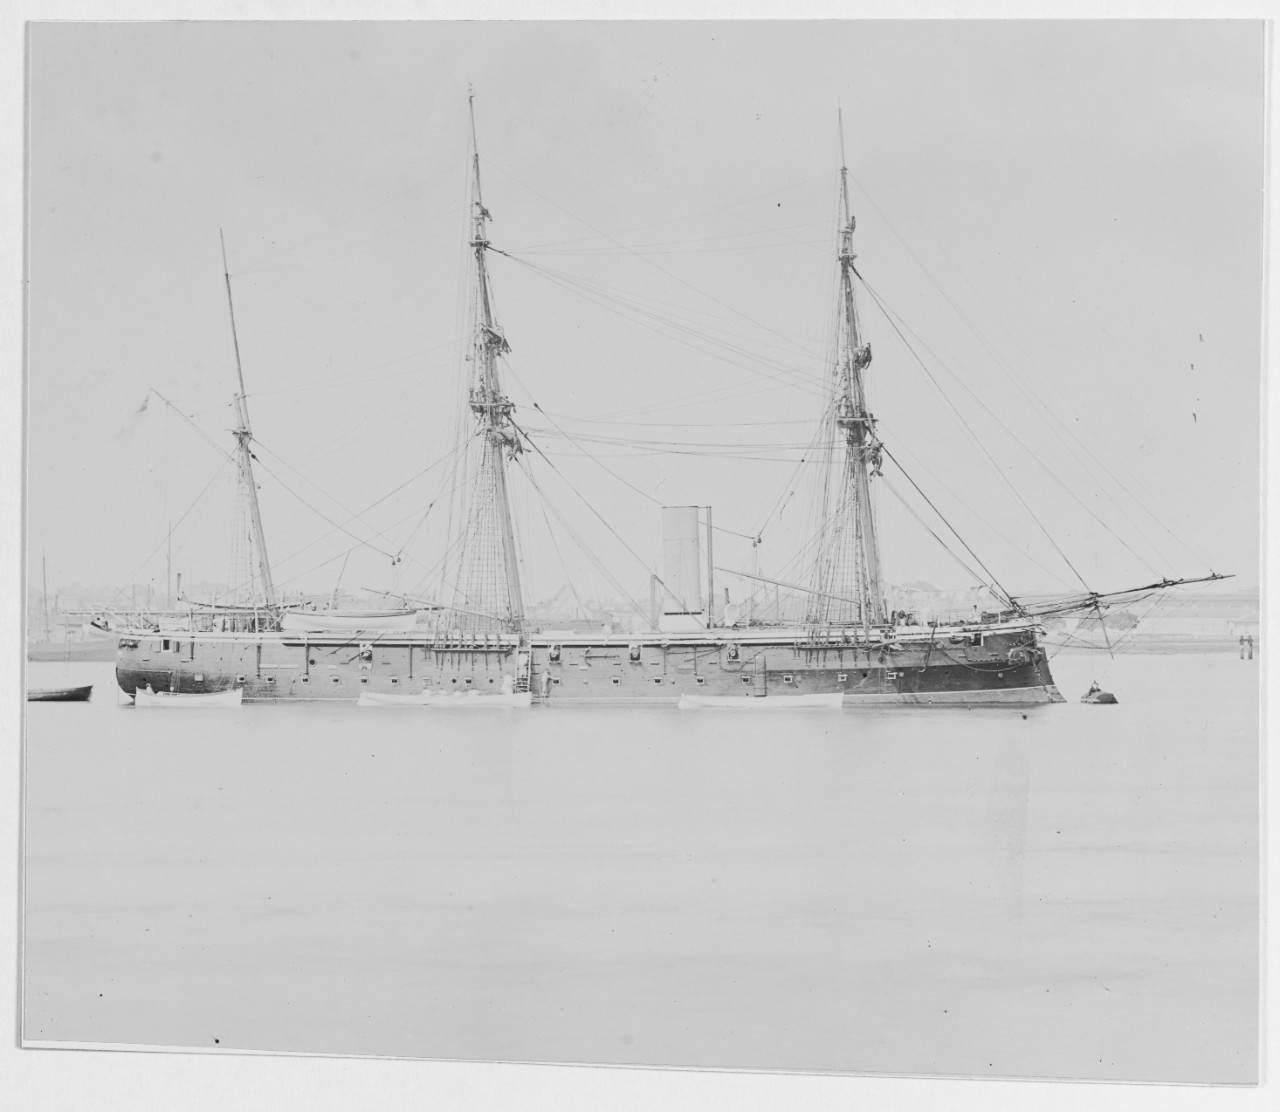 VESTAL (British sloop, 1865-1884)